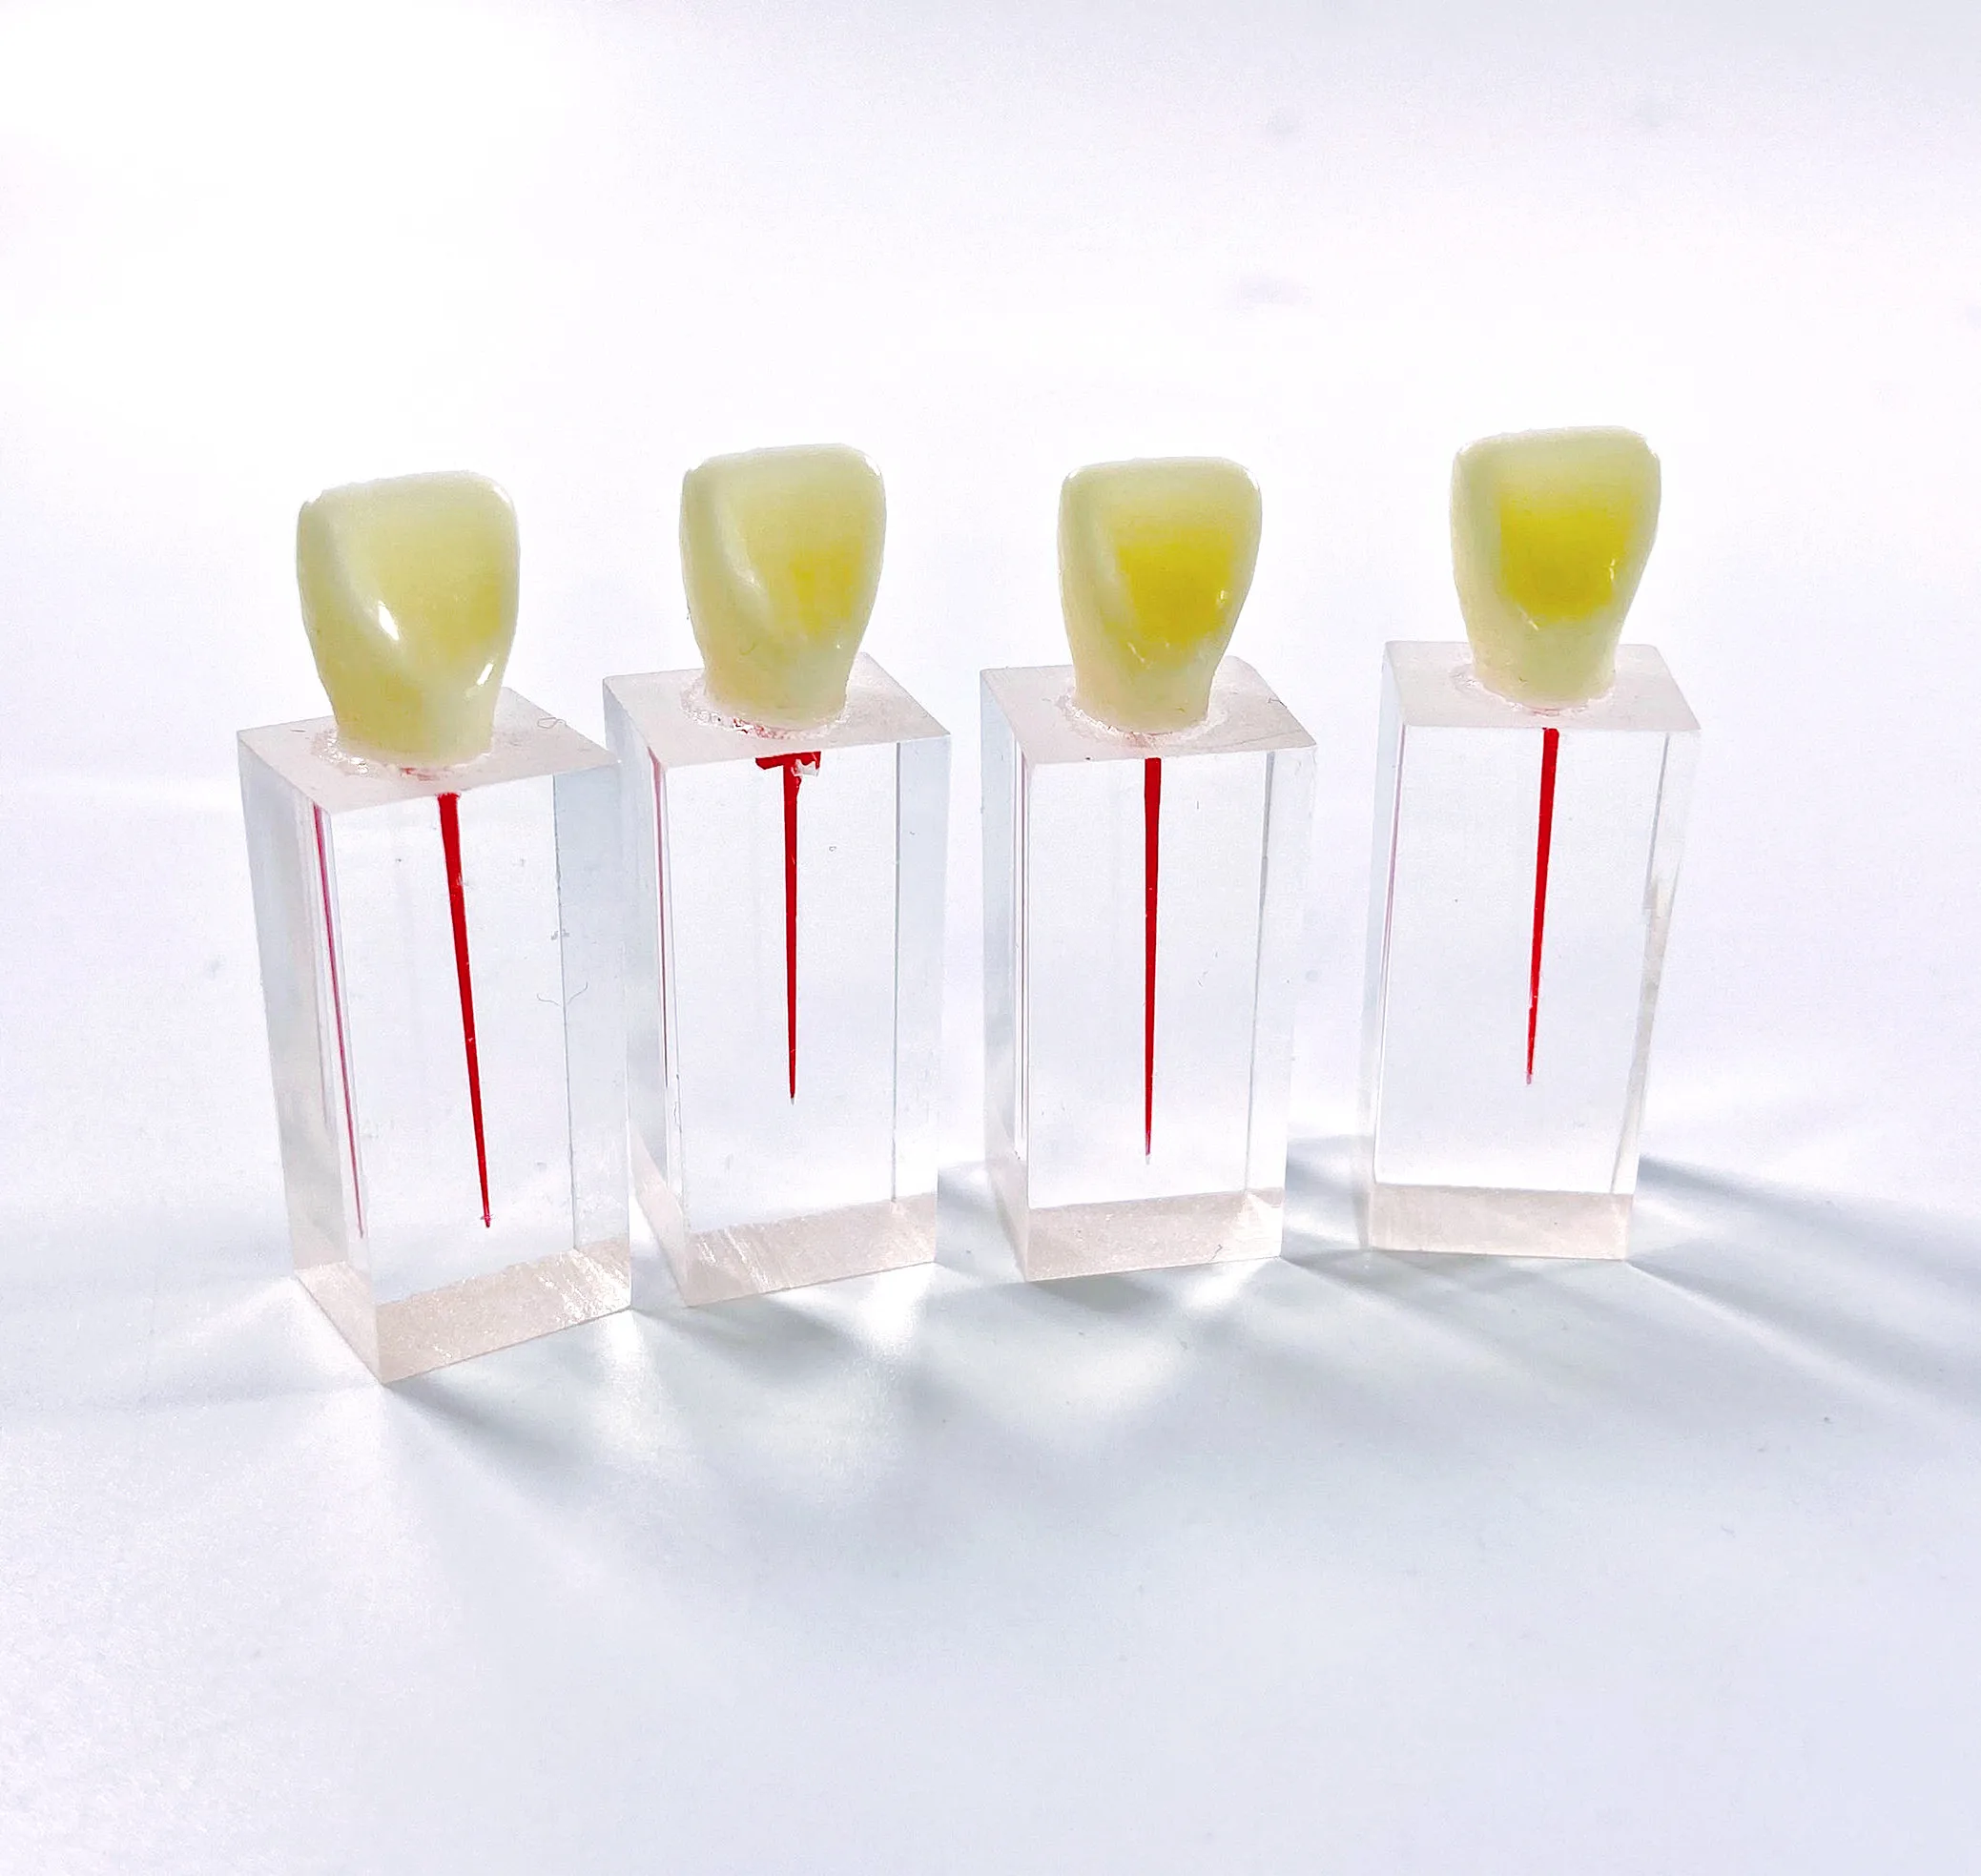 Tanio Model dentystyczny endodontyczny blok kanału korzeniowego praktyka miazga jama